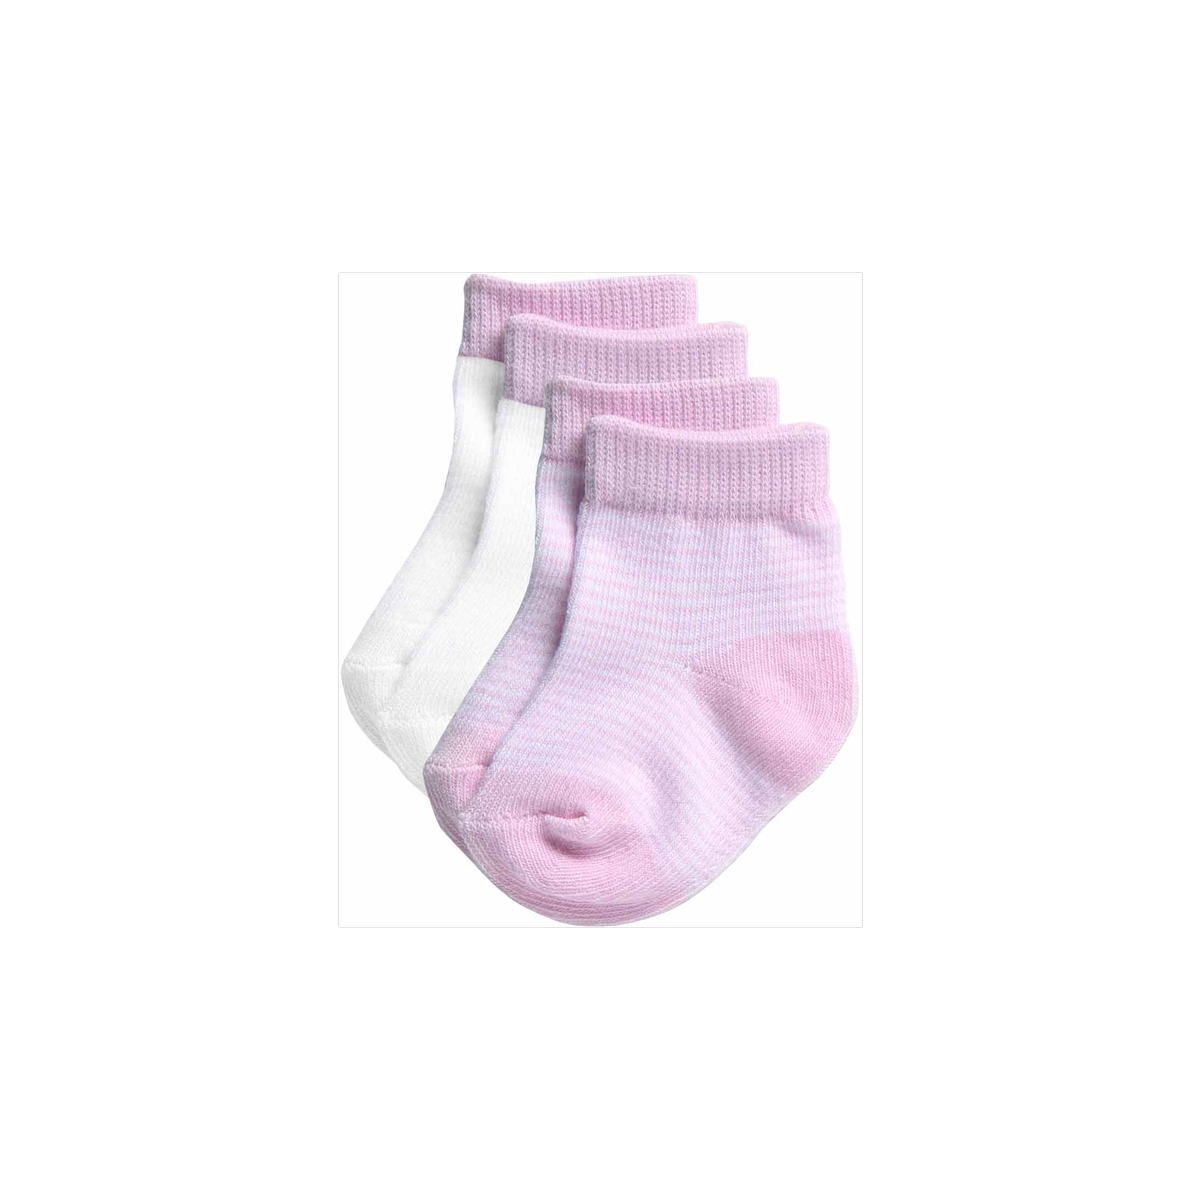 Playette Fashion Preemie Socks 2 pk